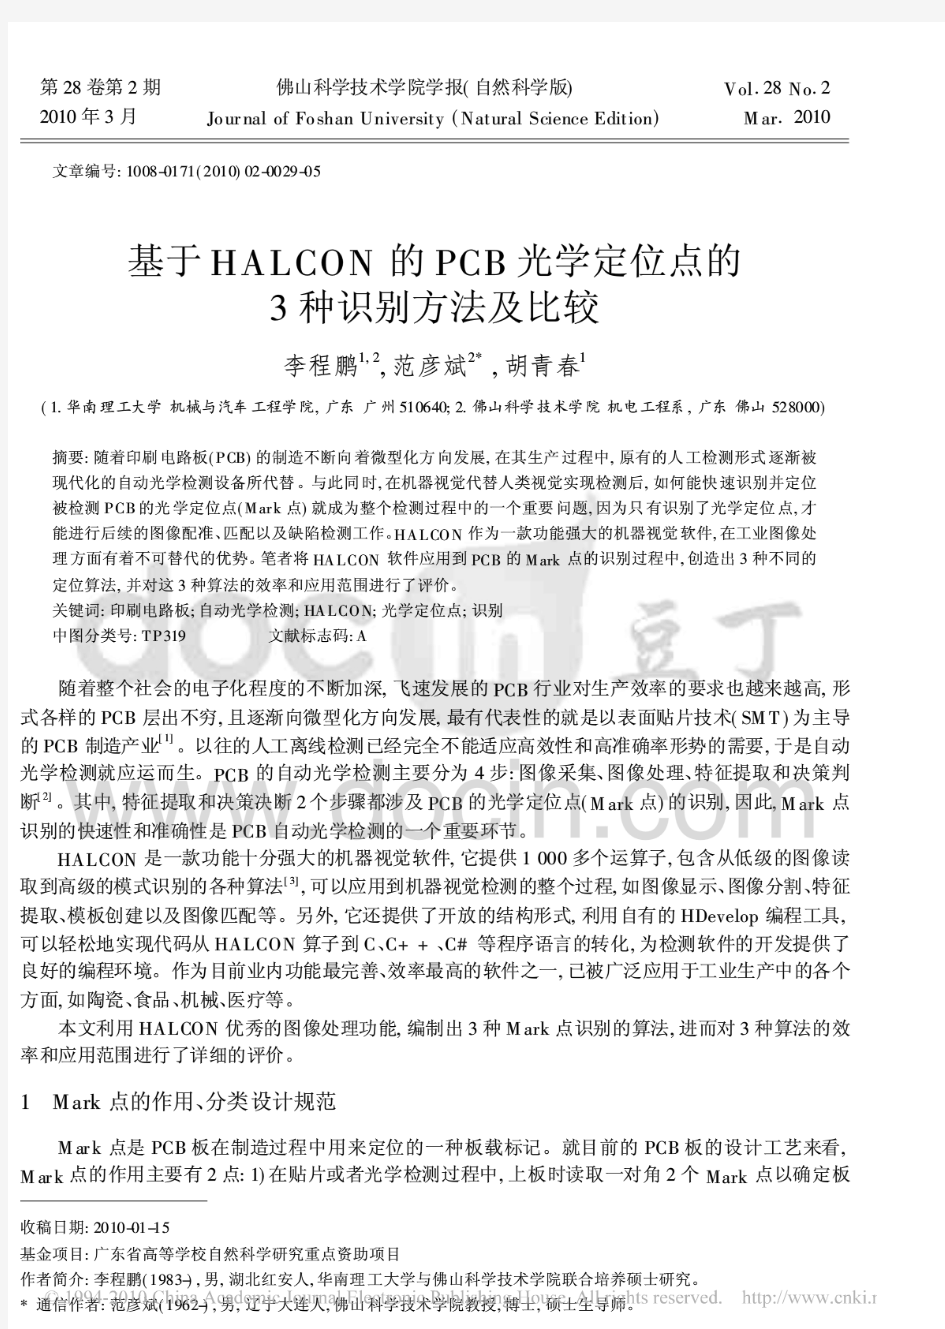 基于HALCON的PCB光学定位点的3种识别方法及比较 (2)